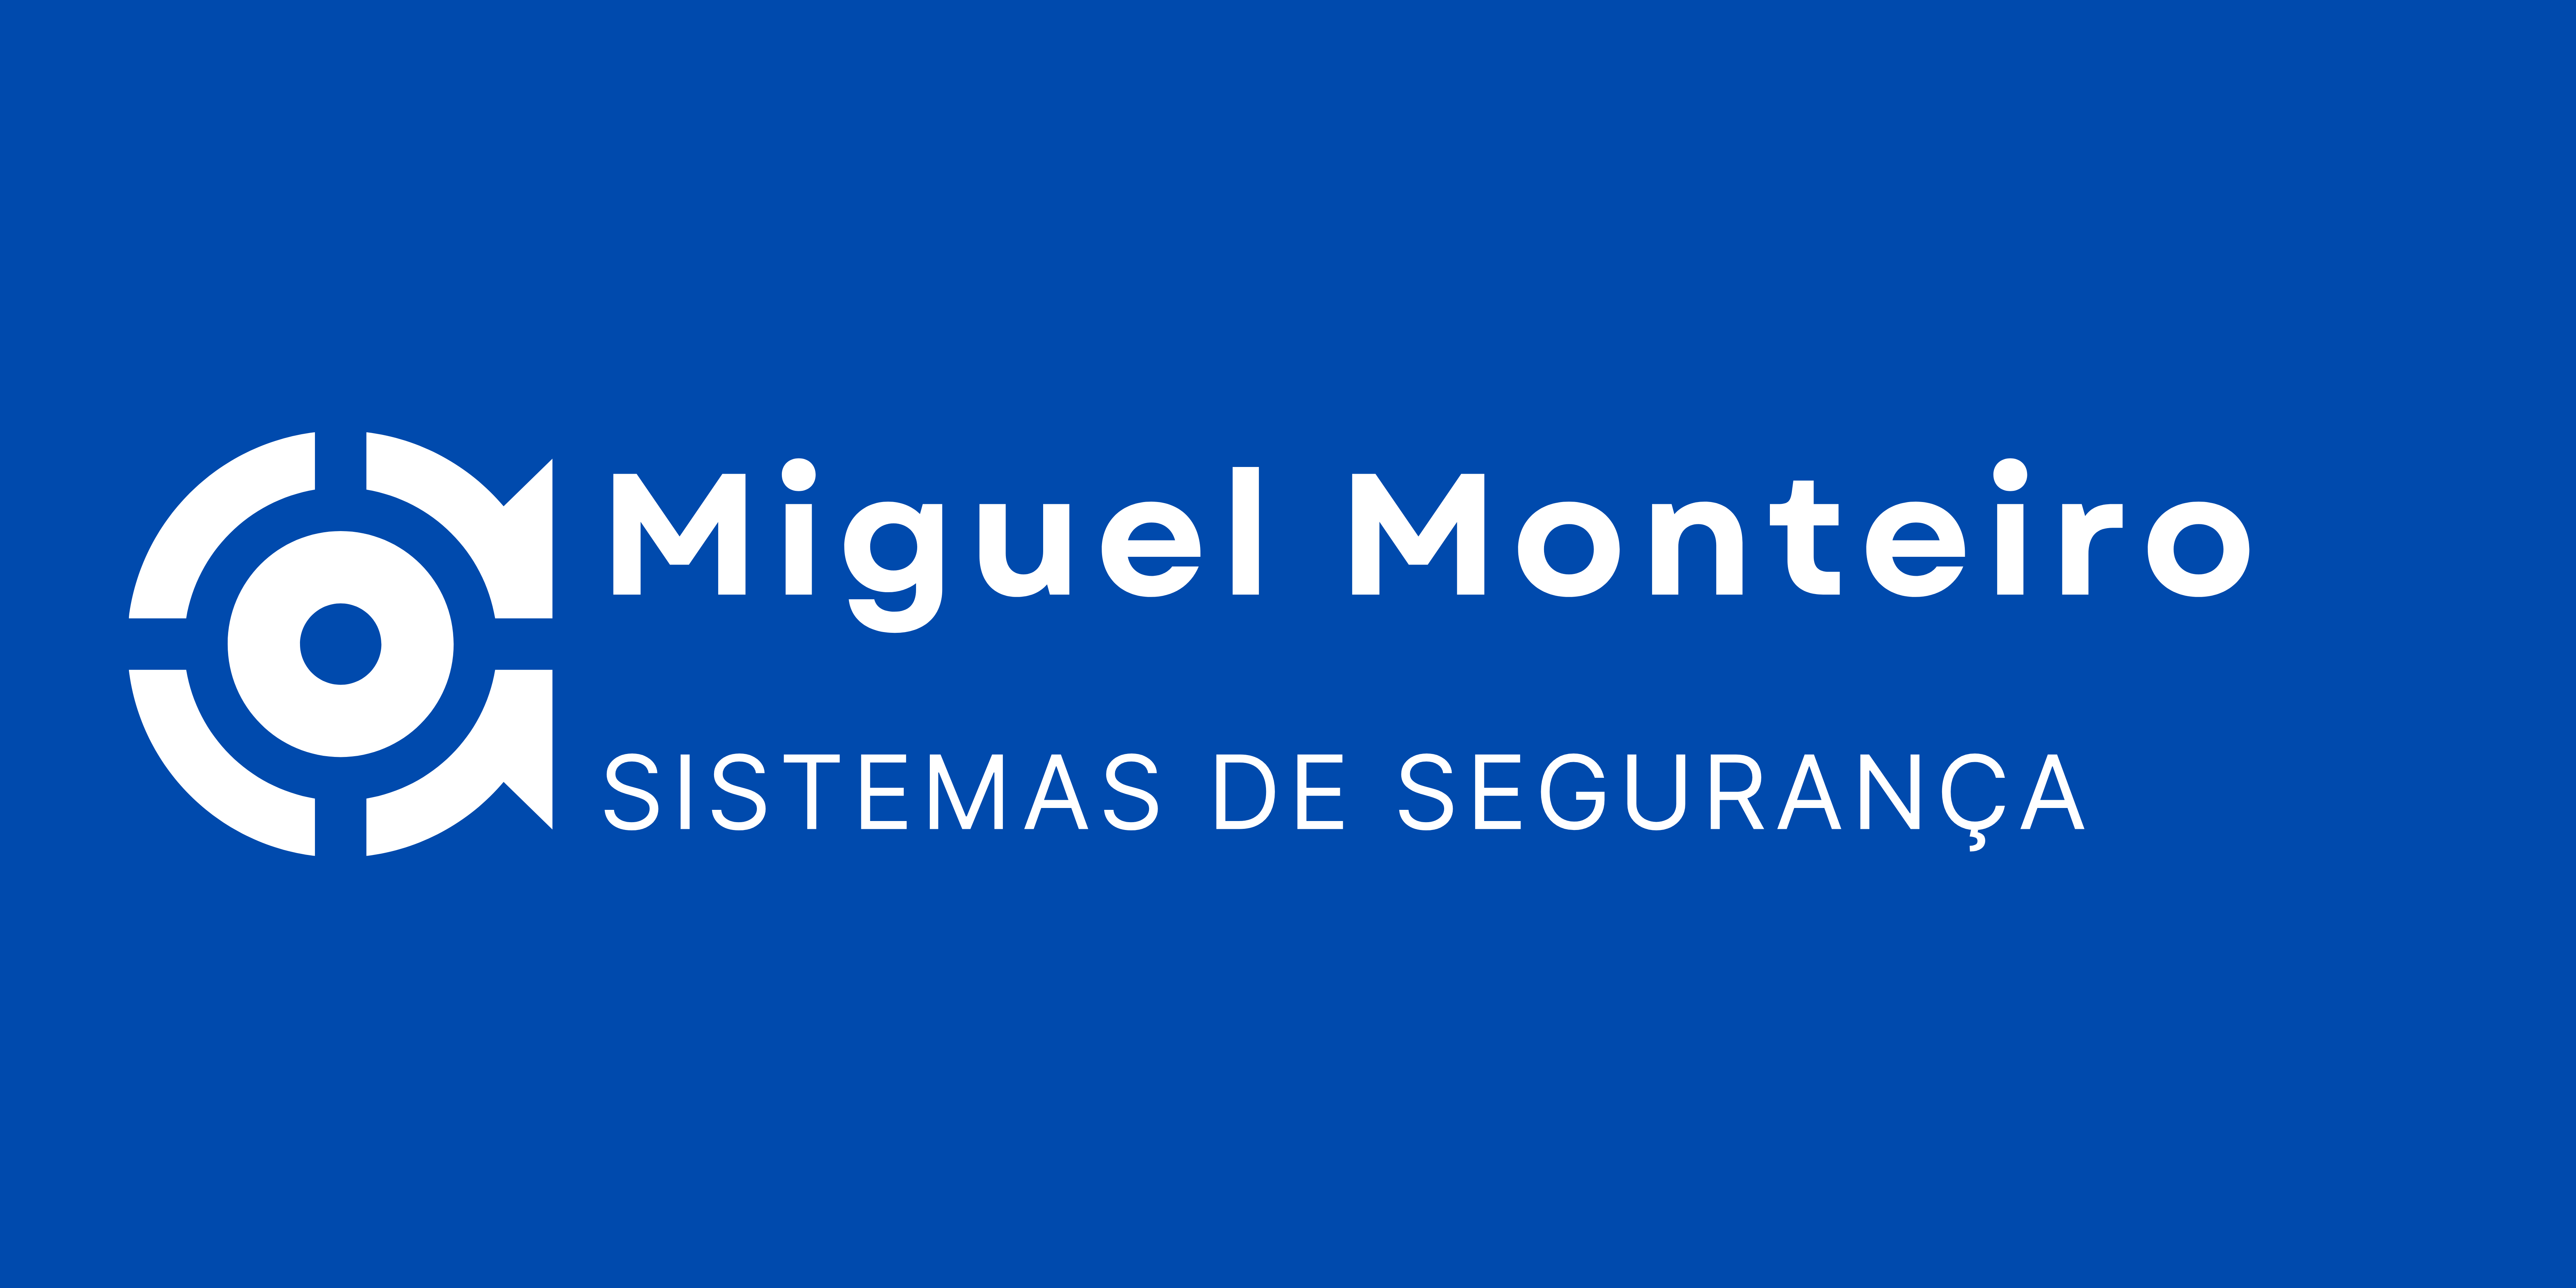 Miguel Monteiro – Sistemas de Segurança